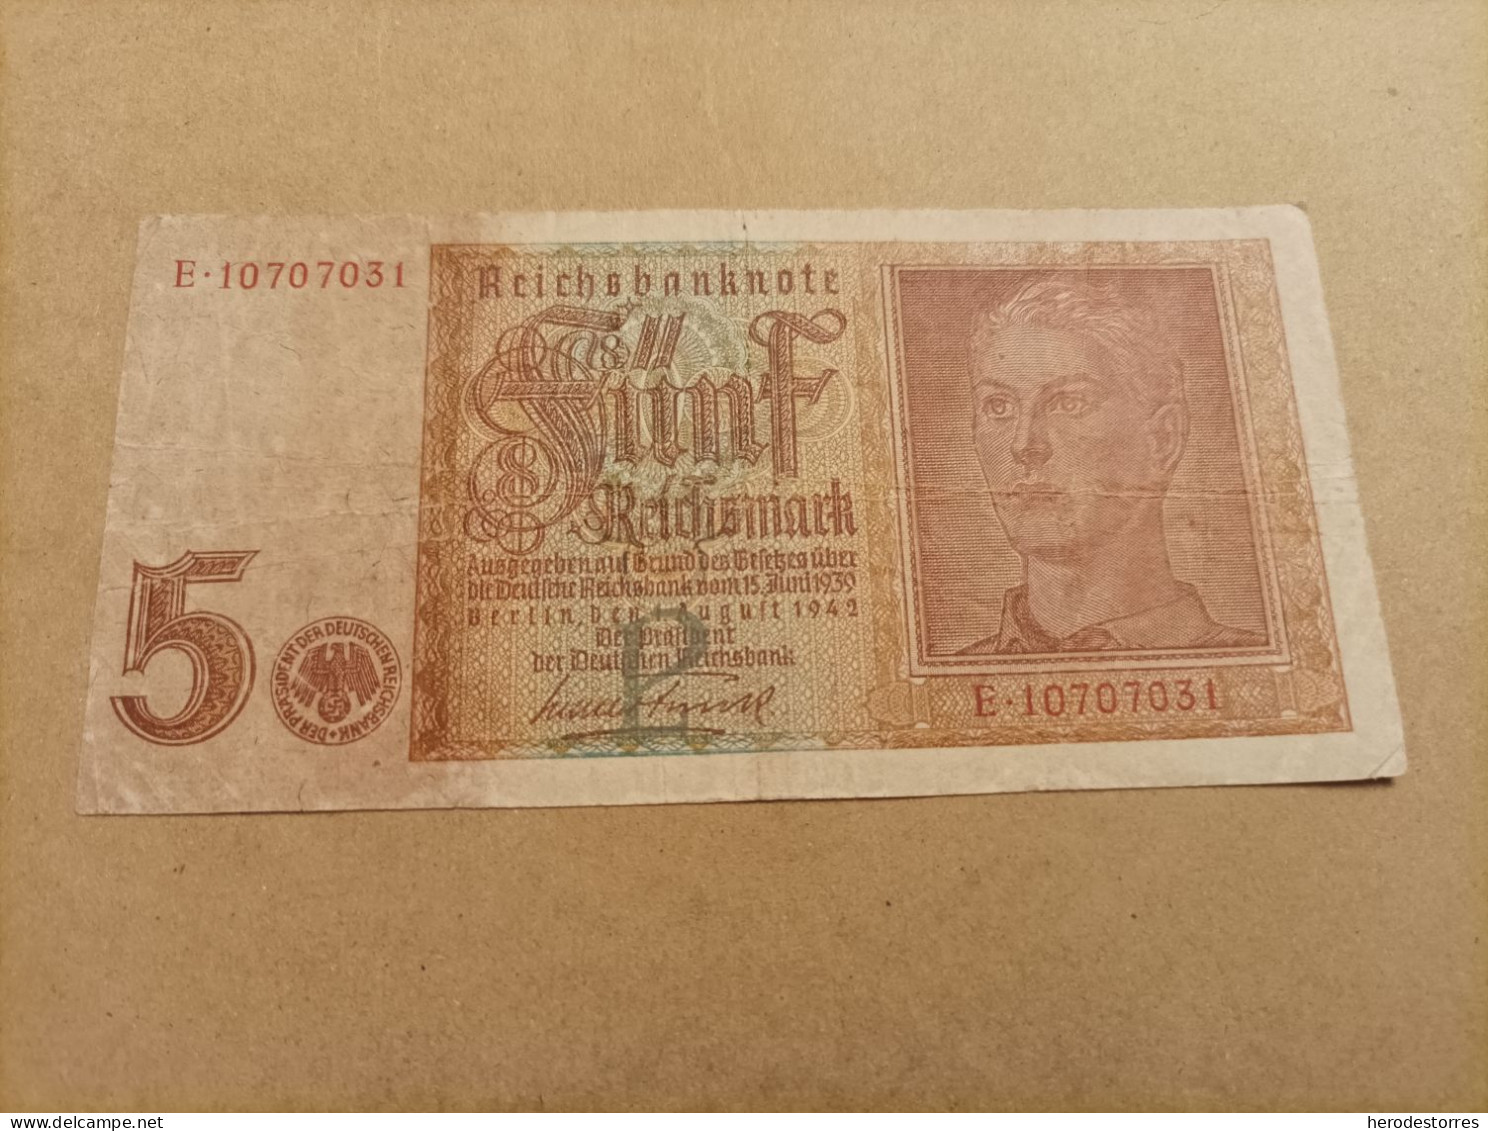 Billete De Alemania De 5 Mark Año 1942 - To Identify